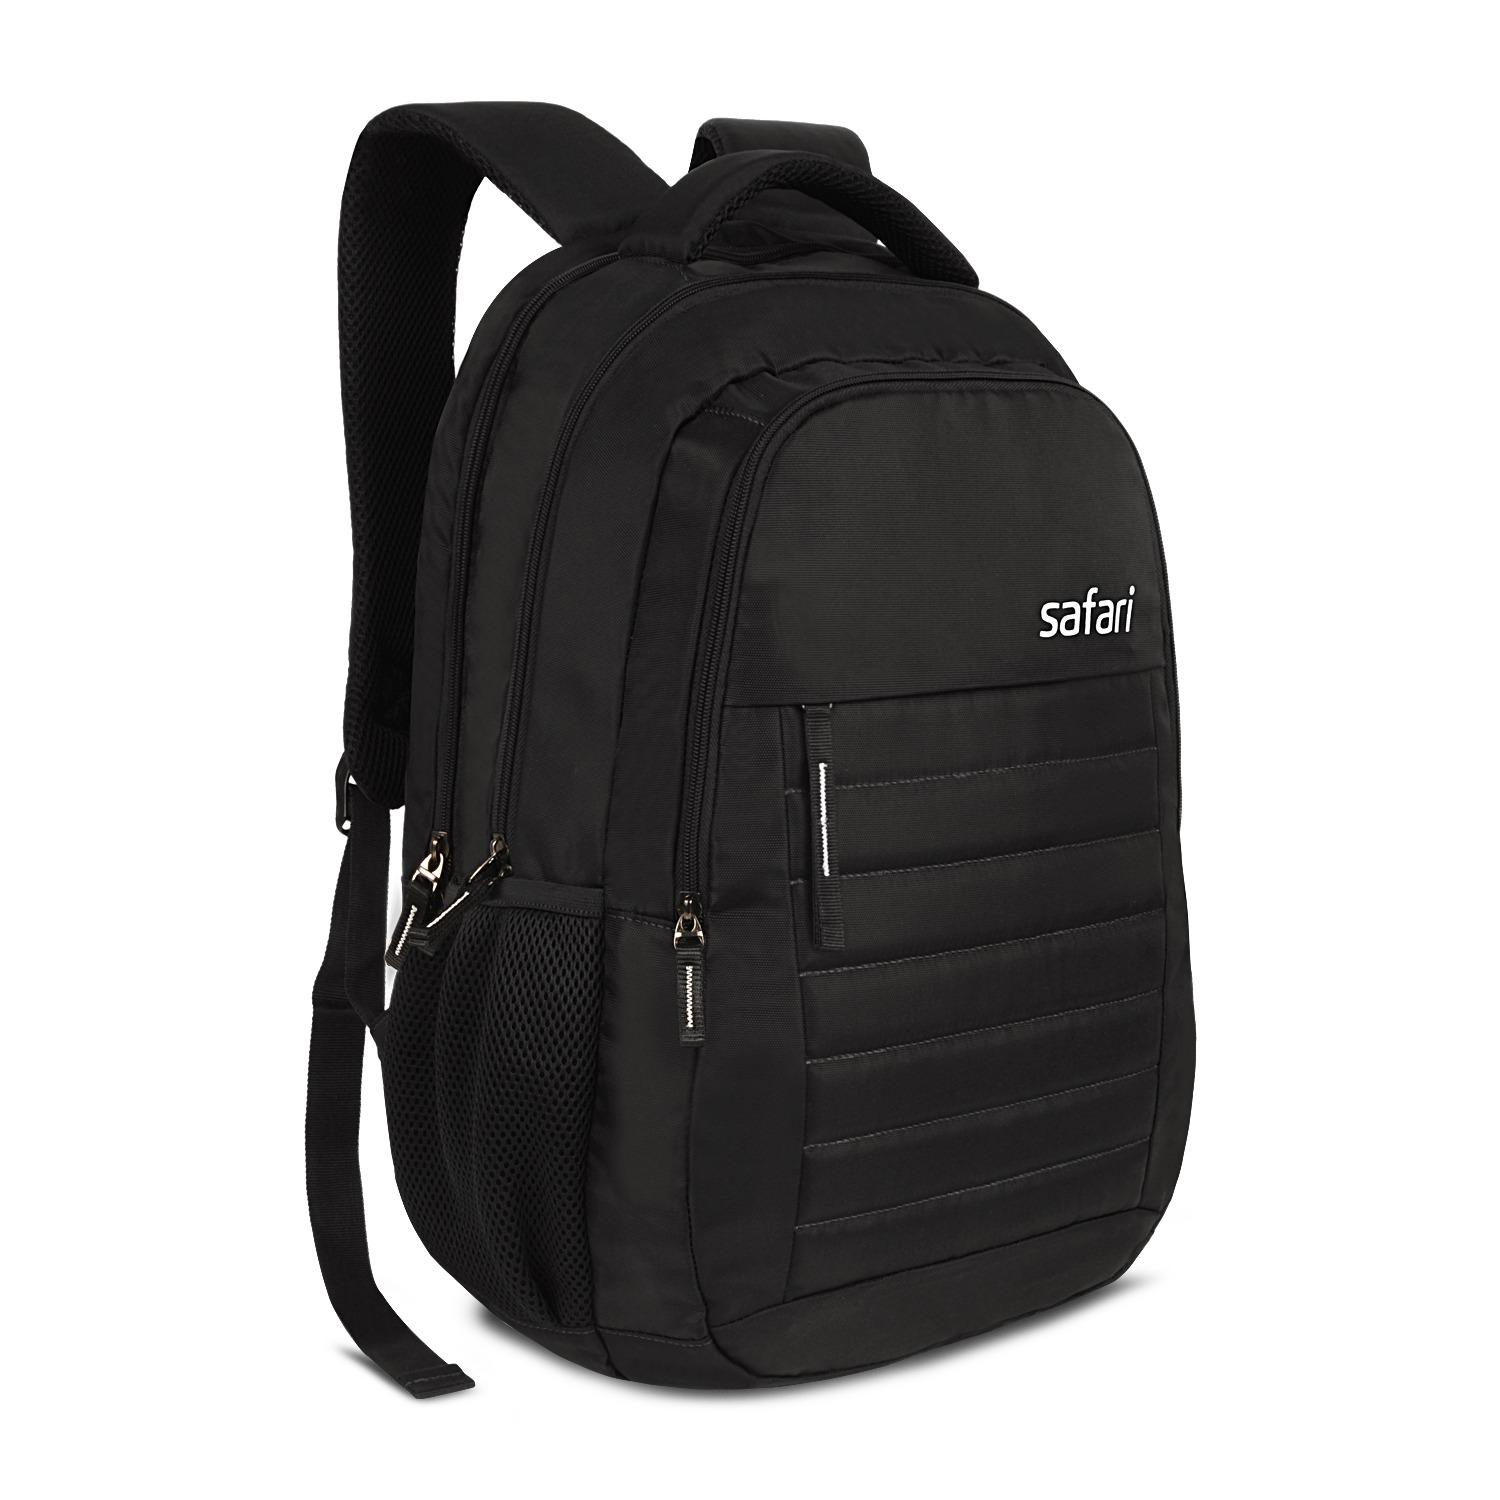 Рюкзак молодежный Safari Deluxe Black, три отделения, черный рюкзак молодежный safari grit grey два отделения